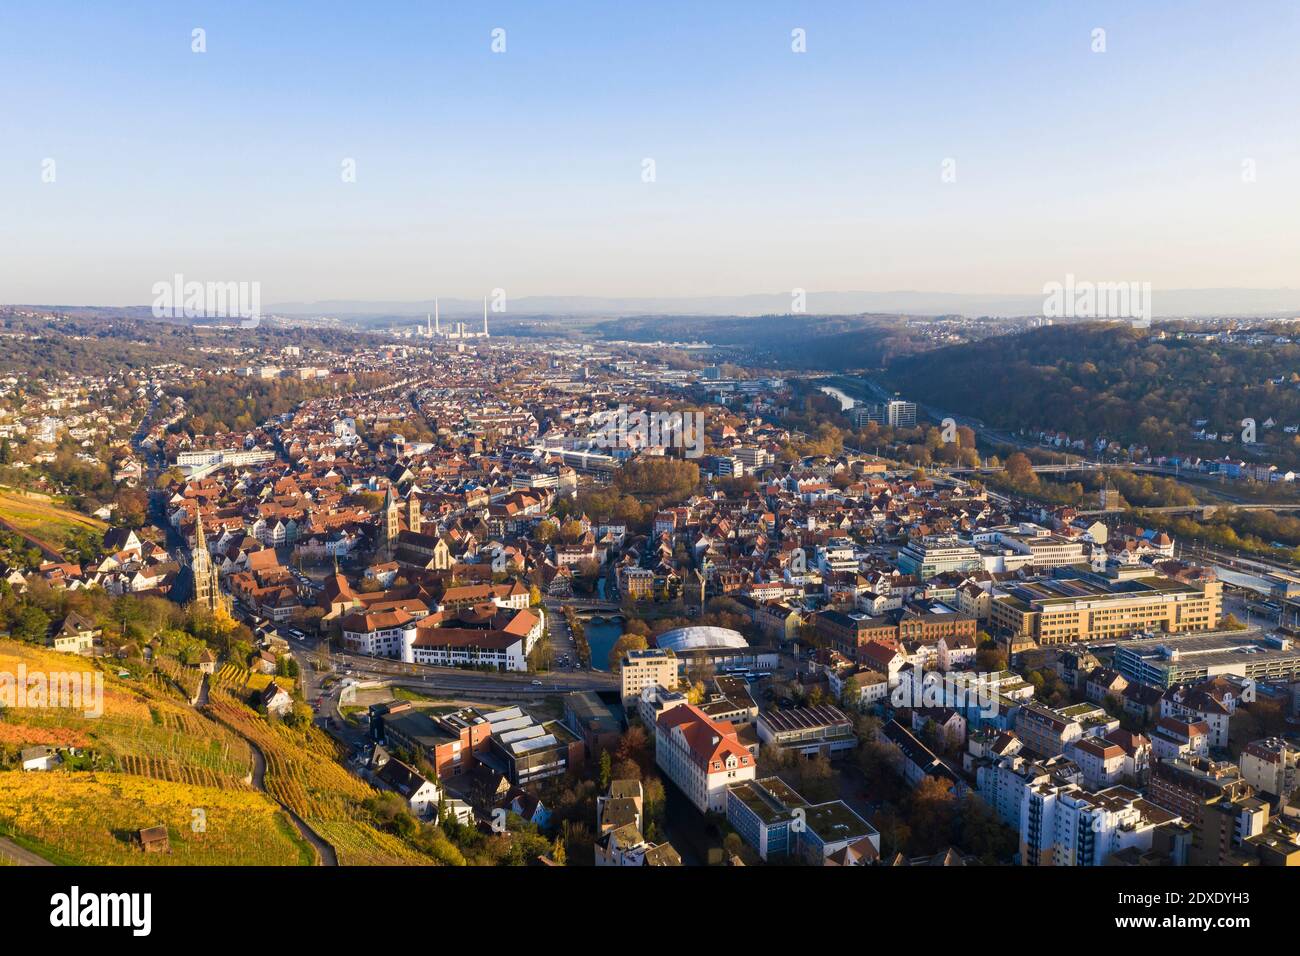 Allemagne, Bade-Wurtemberg, Esslingen, vignobles et ville, vue aérienne Banque D'Images